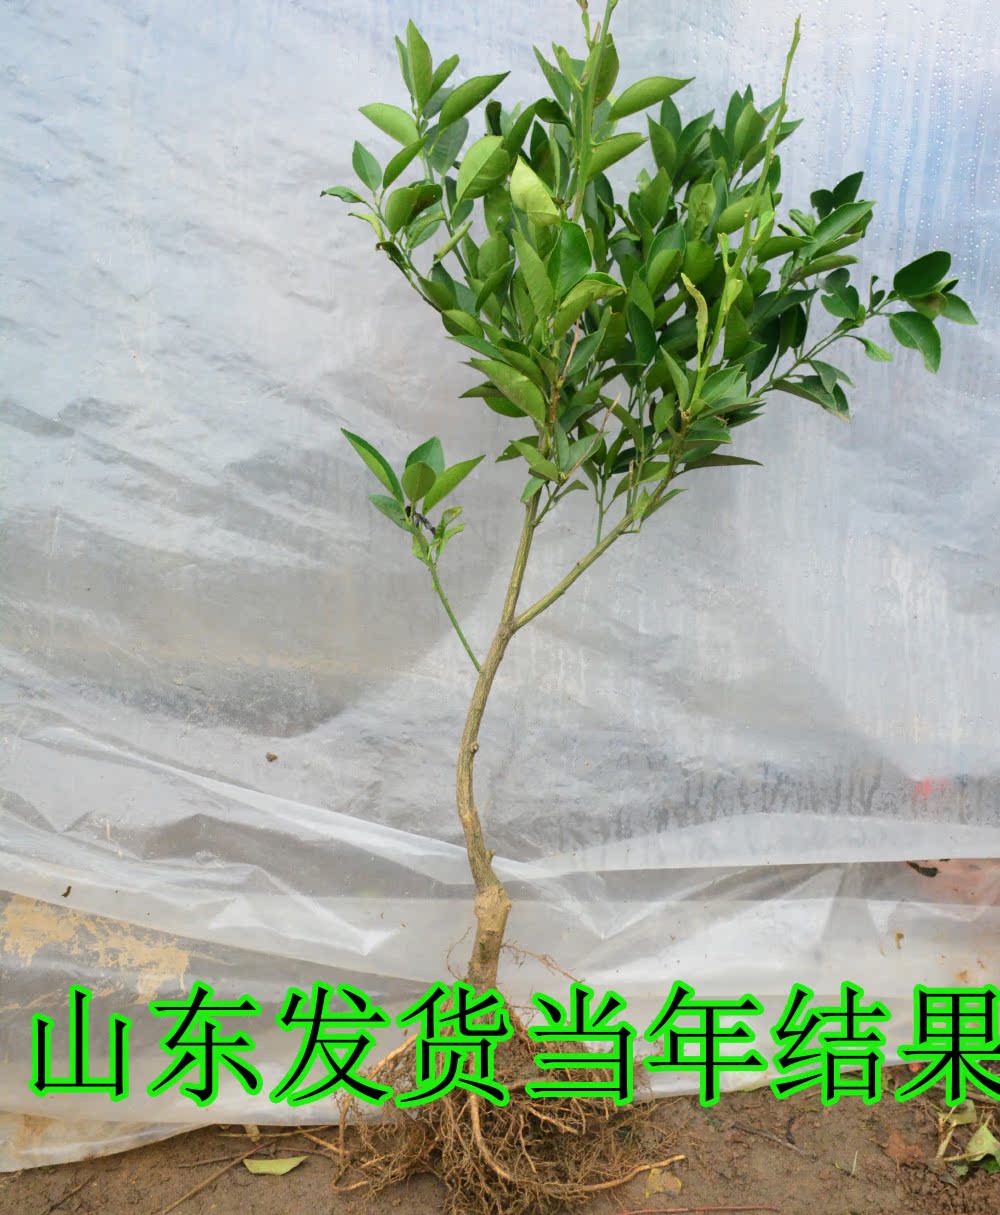 正品[橘子树盆栽]盆栽桔子树怎么养评测 盆栽桔